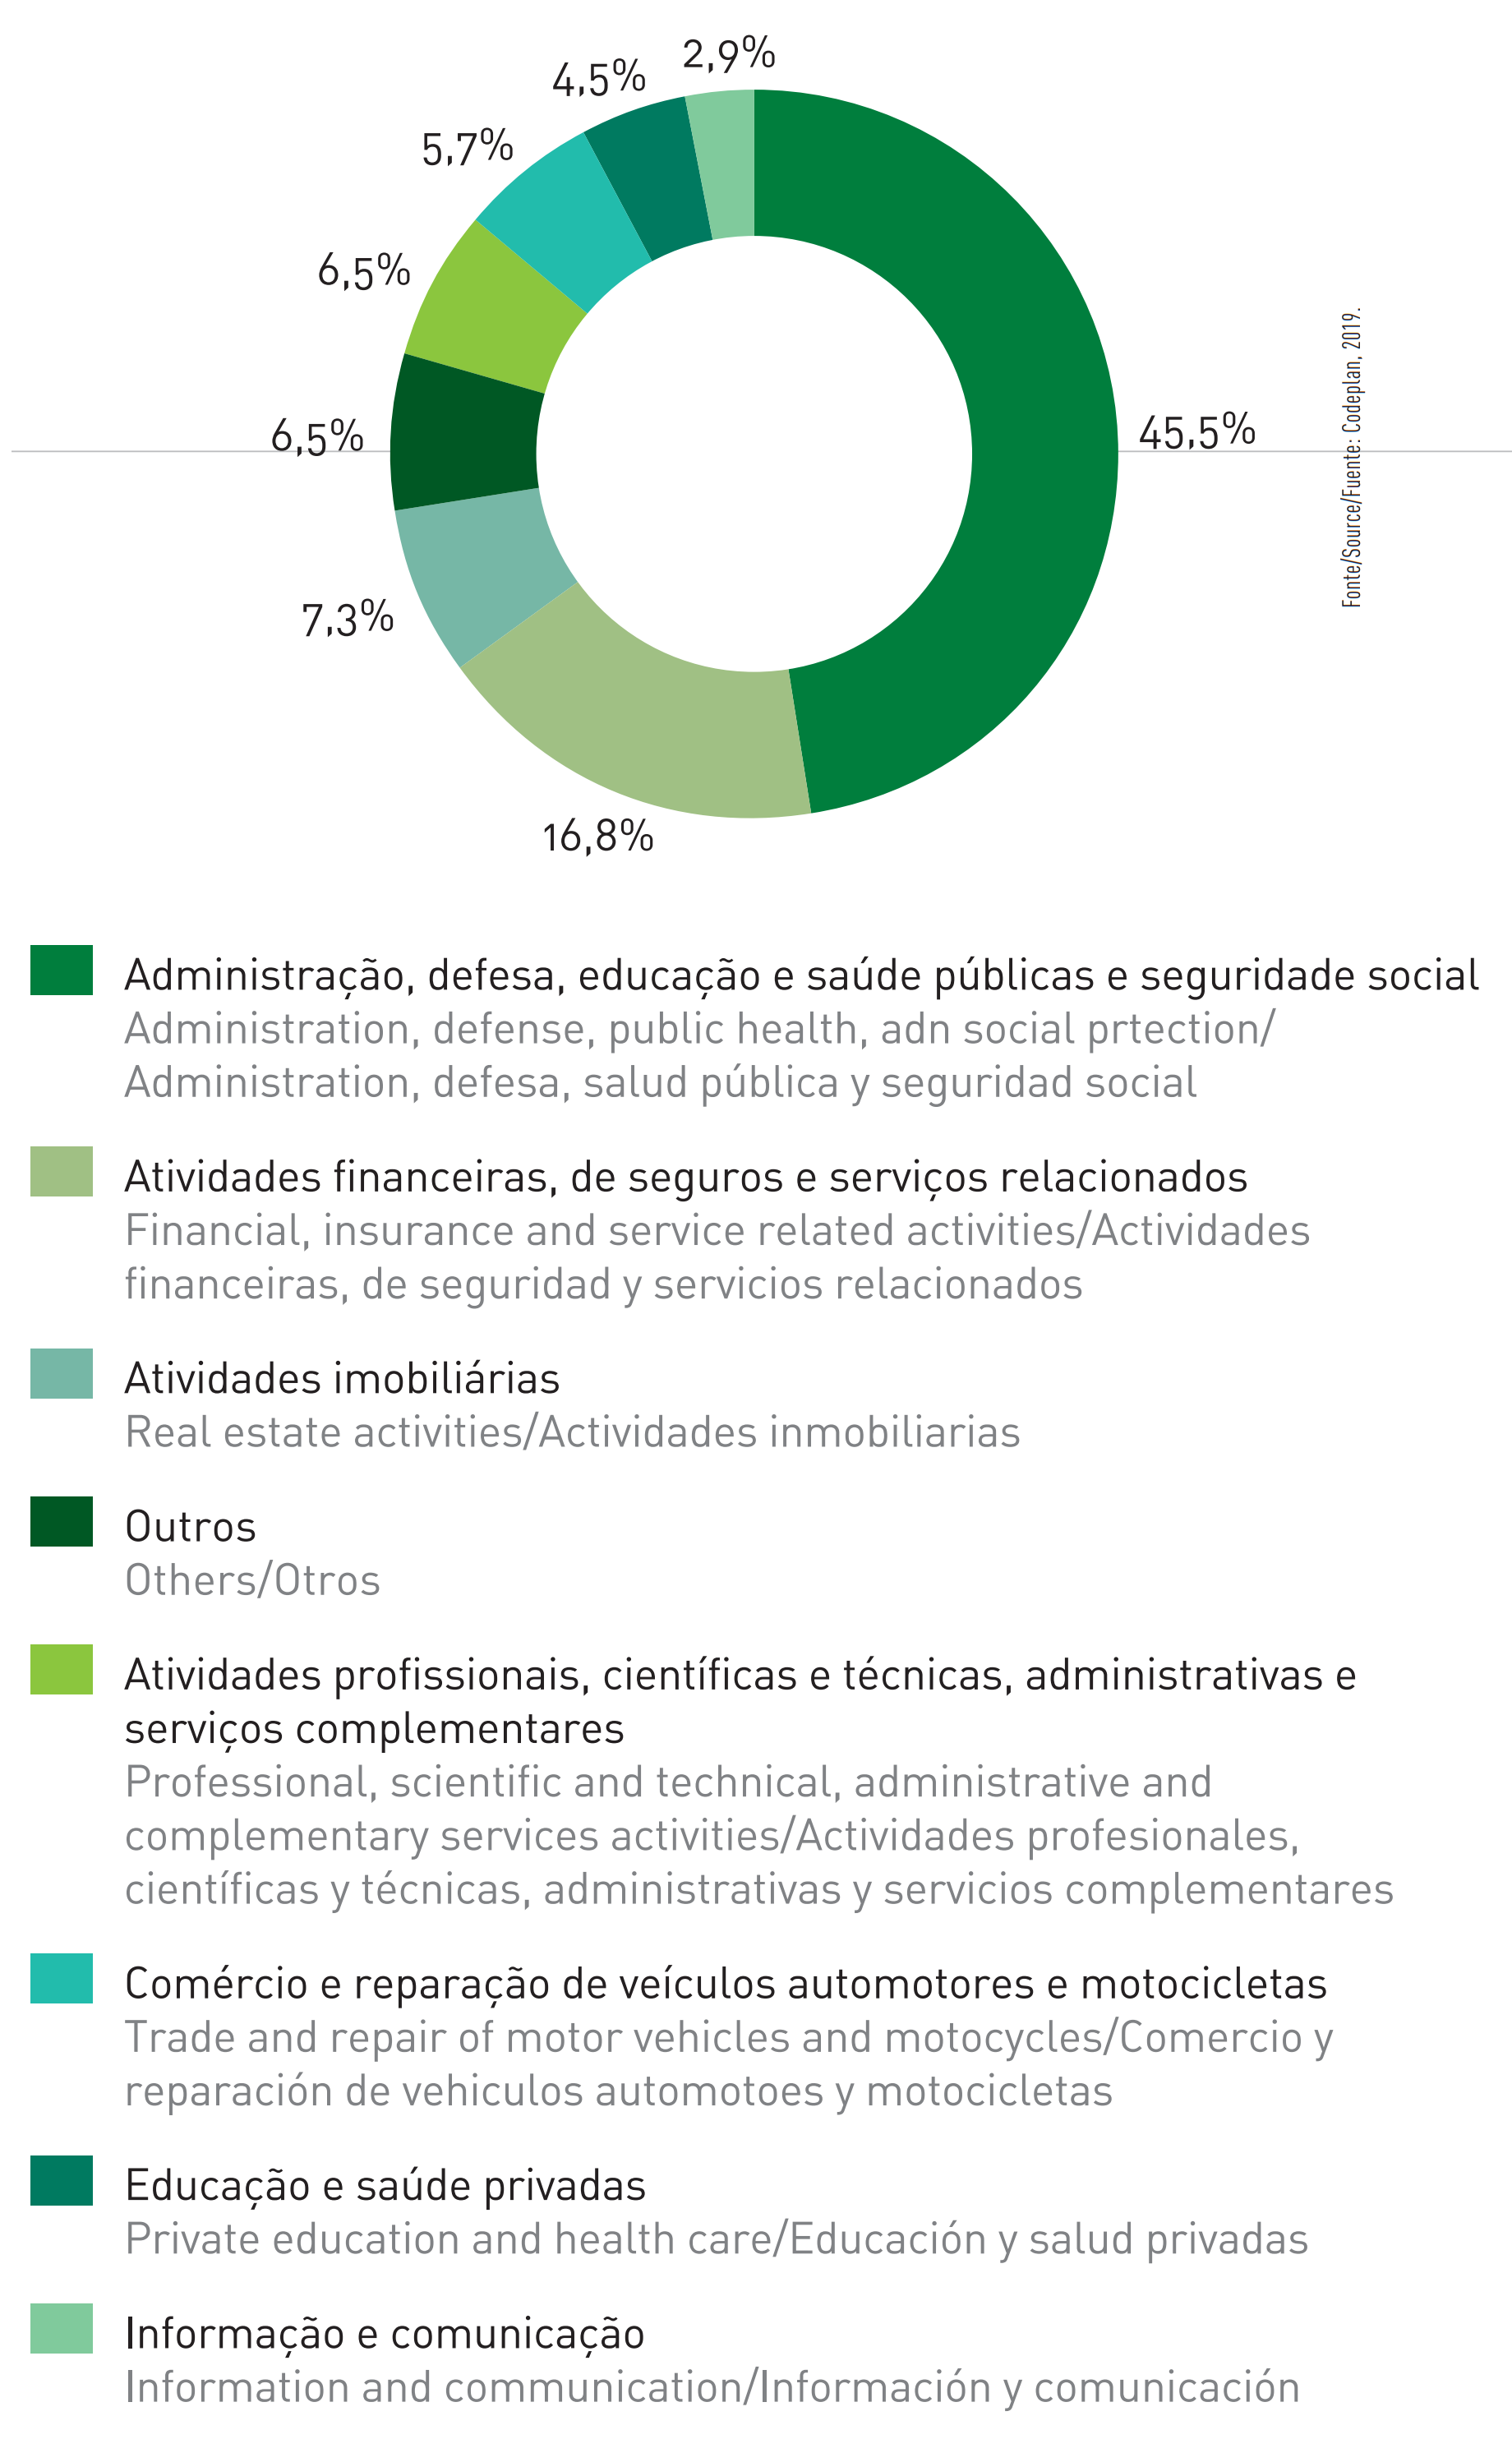  Figura 39 - Participação das atividades do setor de serviços no PIB (2017)